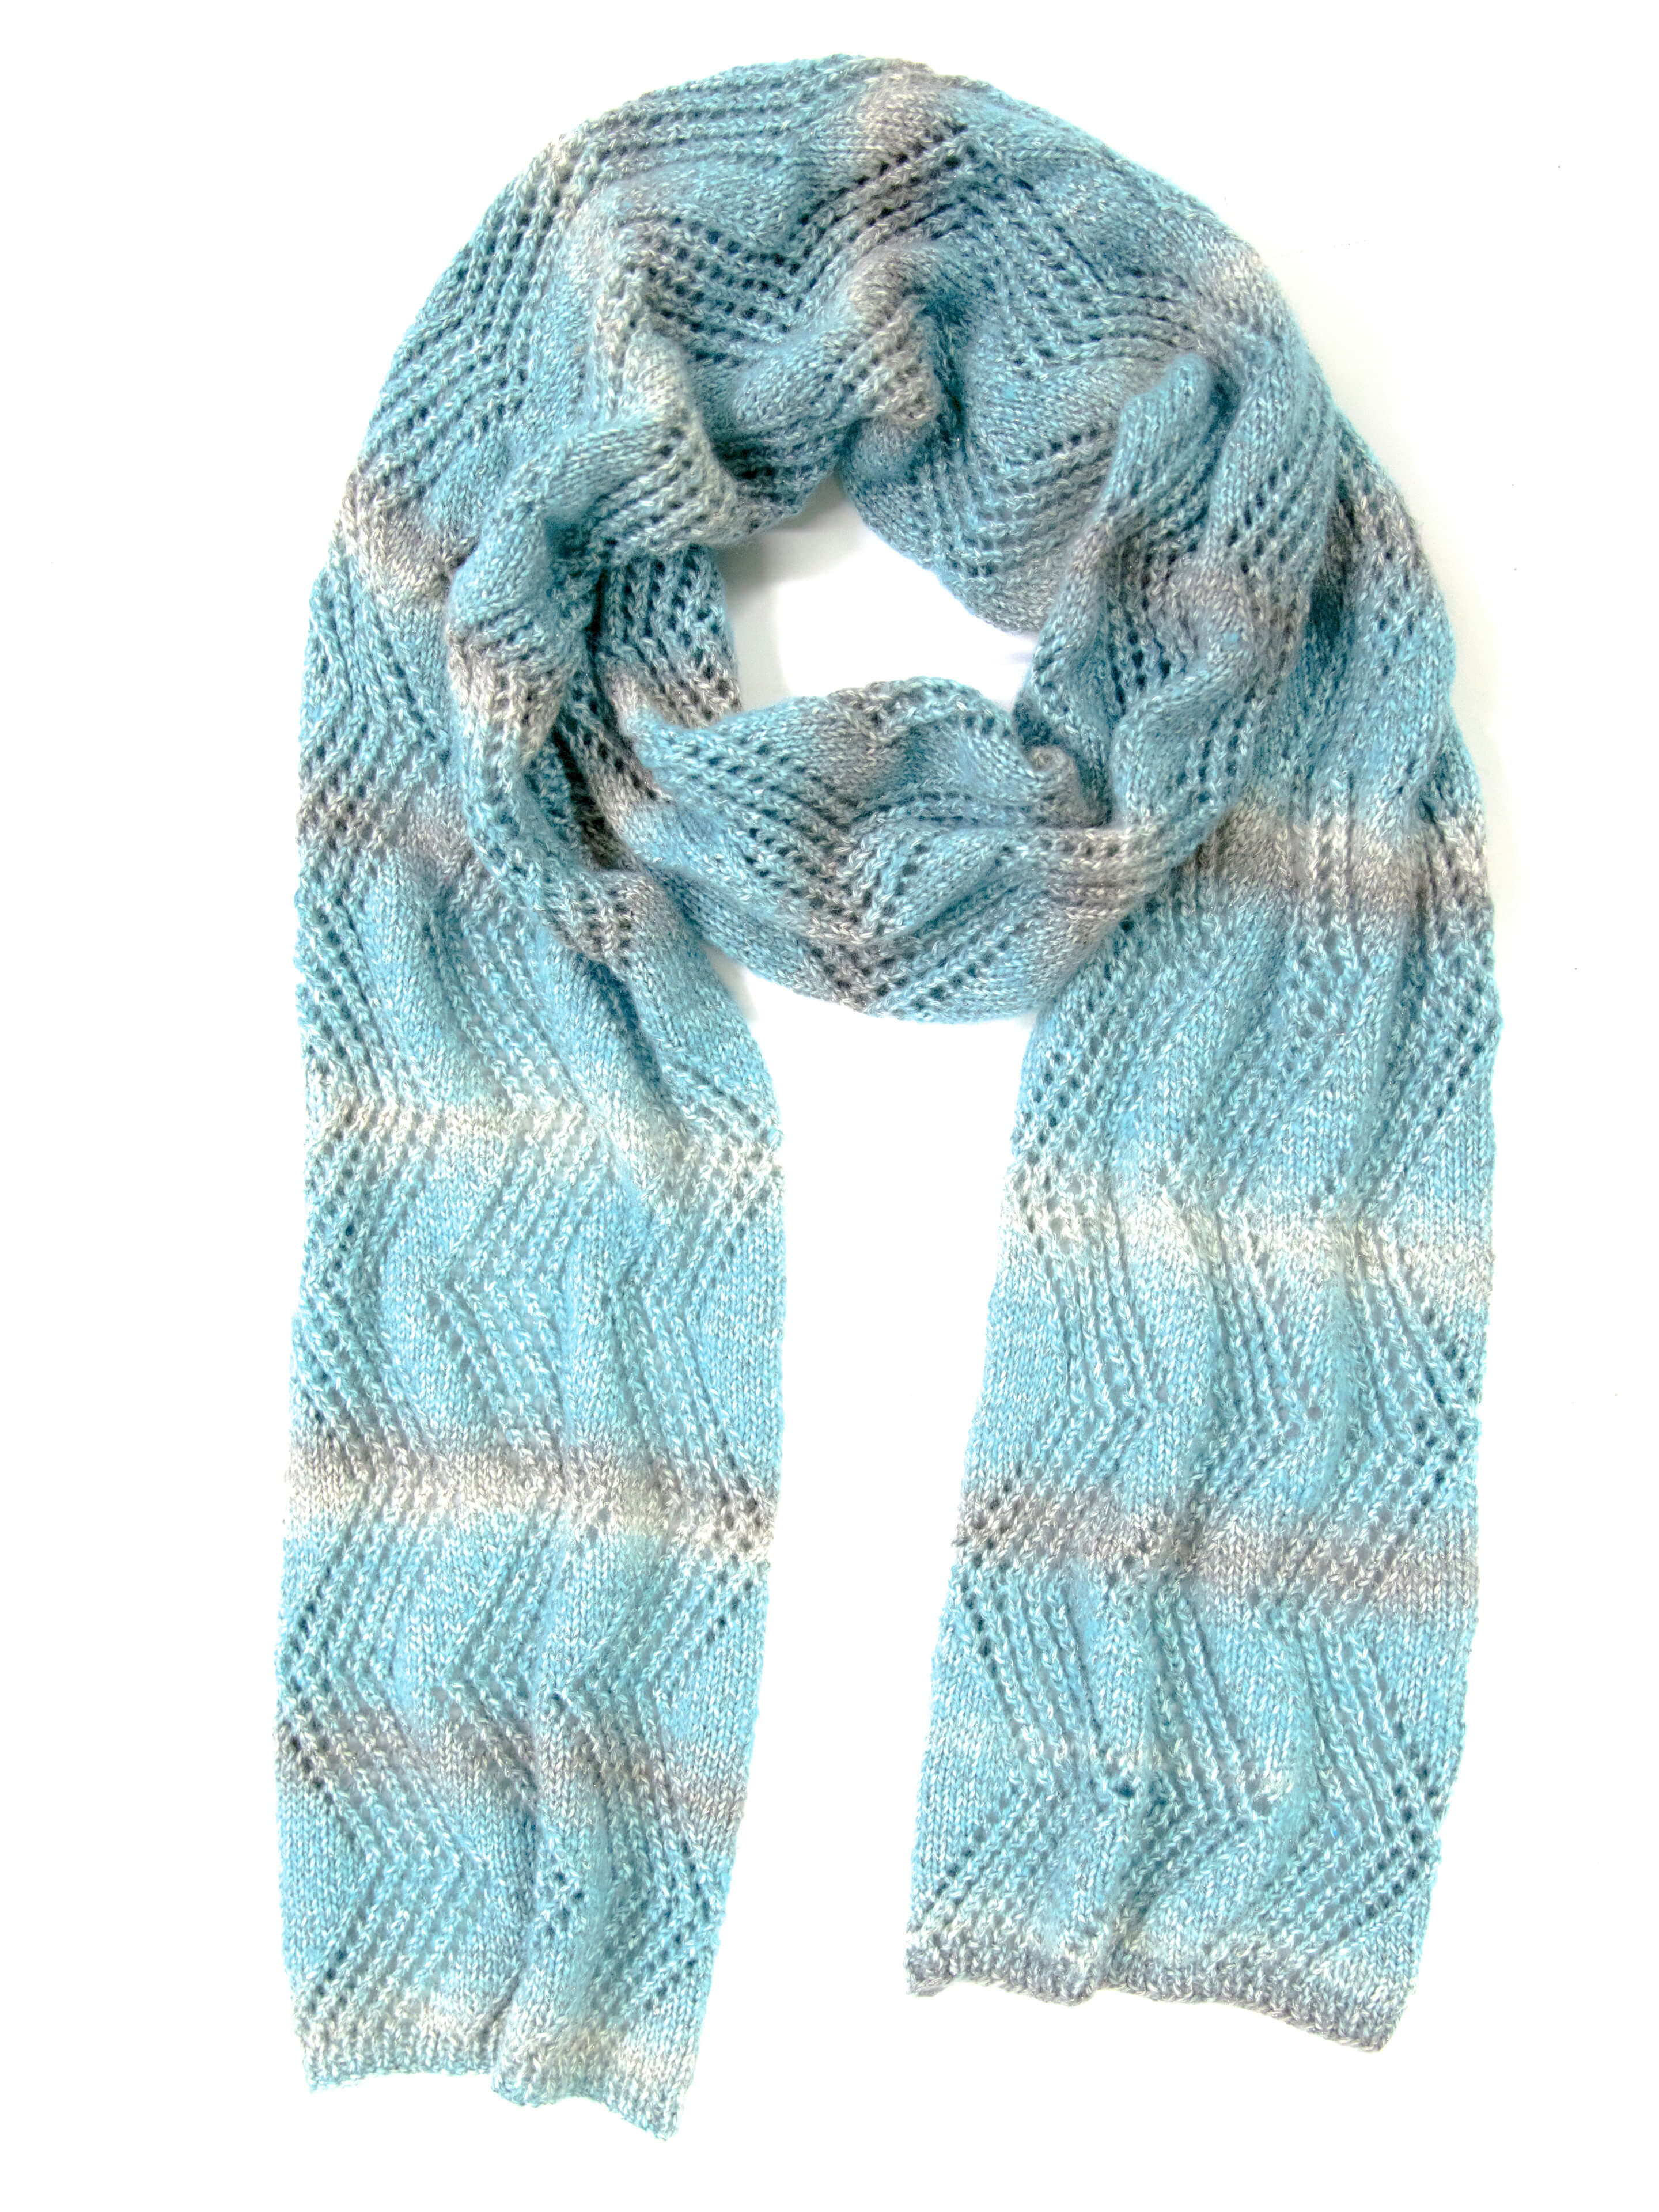 blau-grau selbstgemachter Schal